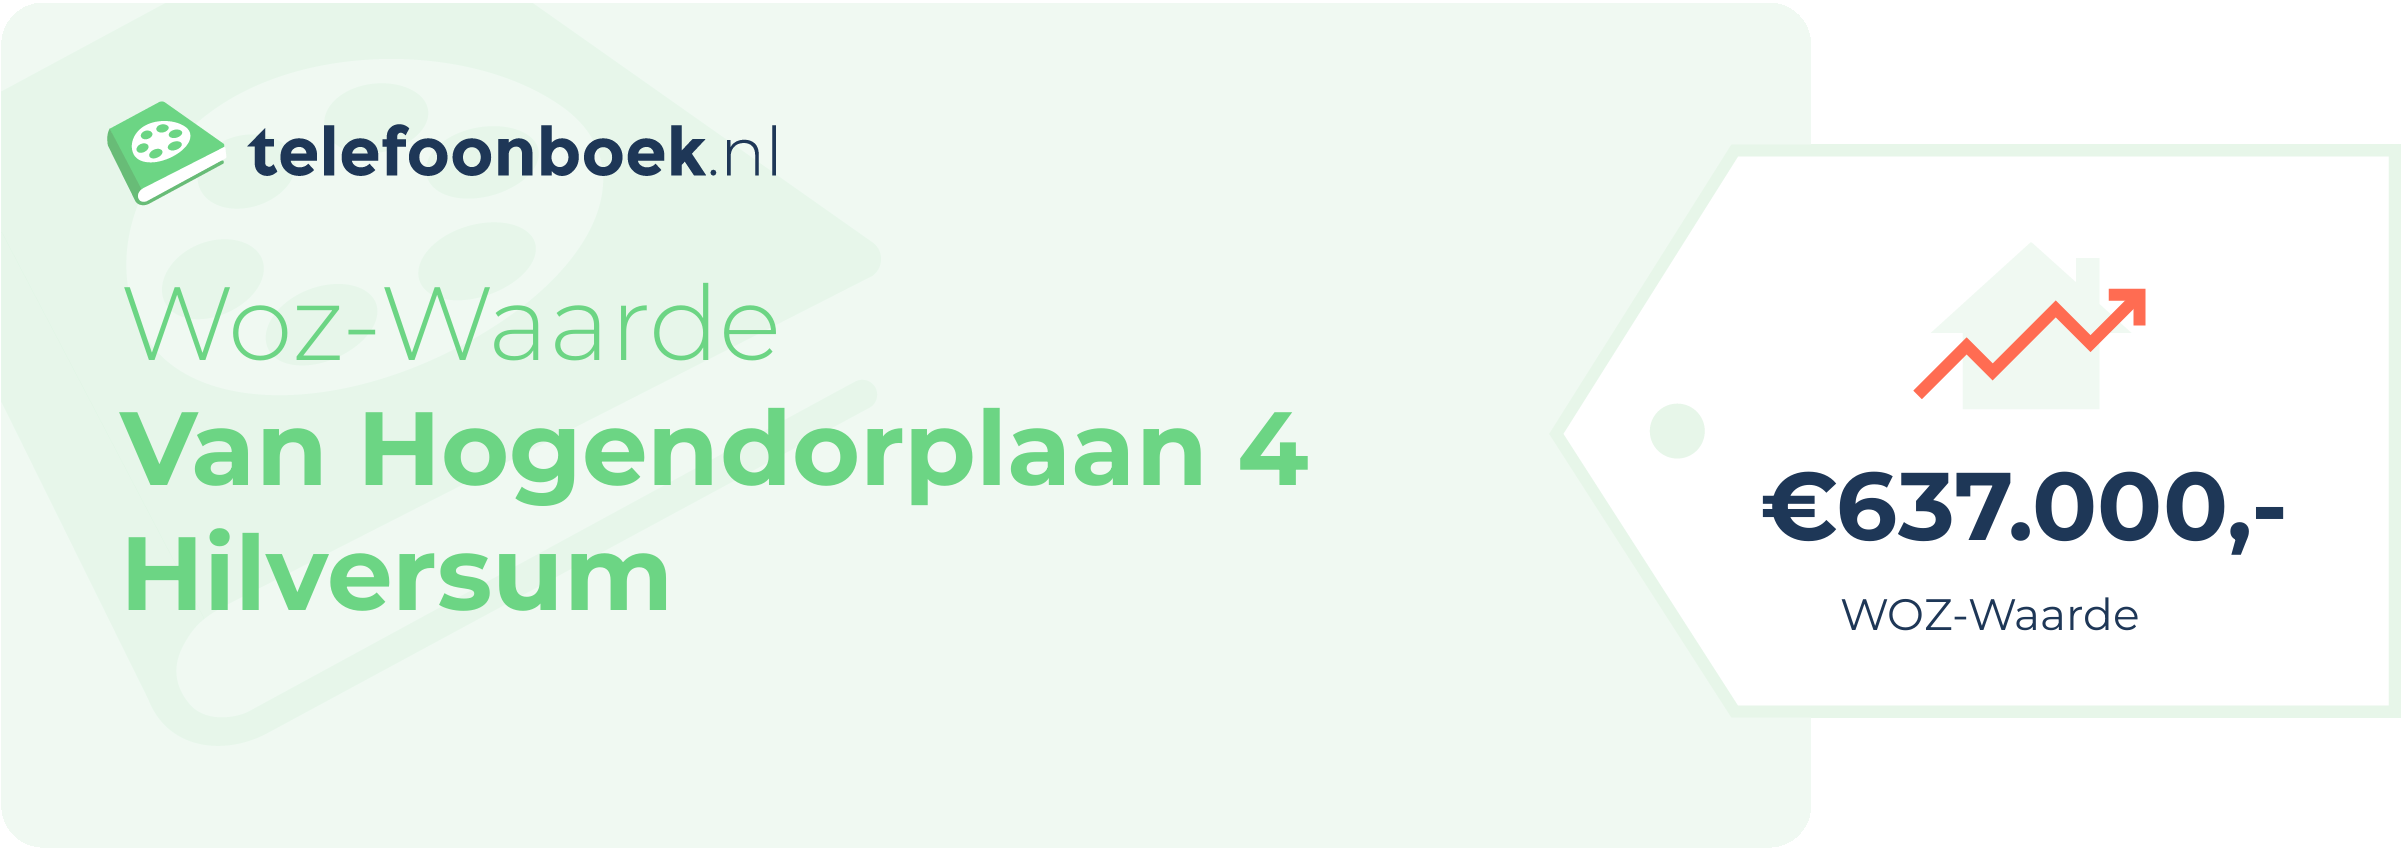 WOZ-waarde Van Hogendorplaan 4 Hilversum